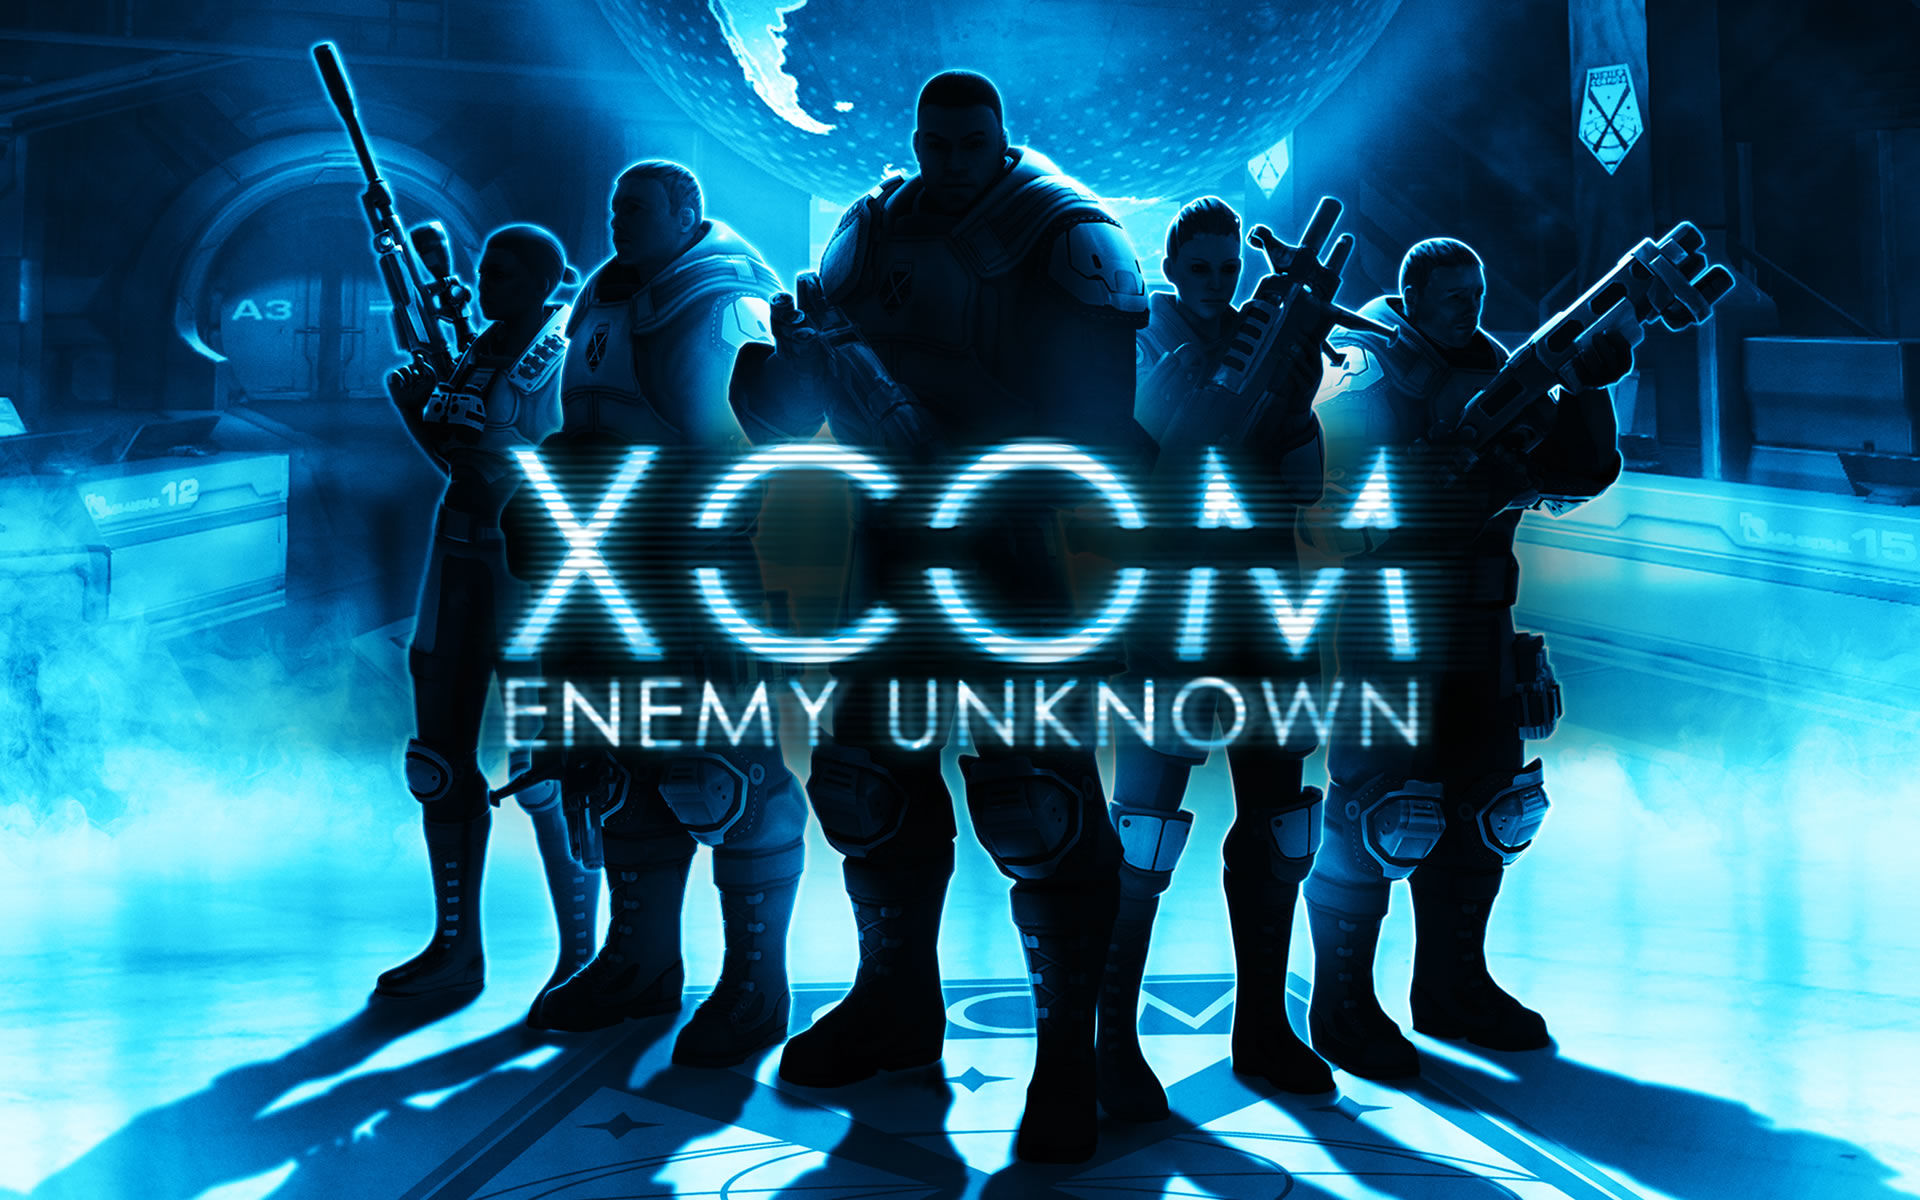 [긴박,진지]XCOM Enemy Unknown OST - Ready for Battle